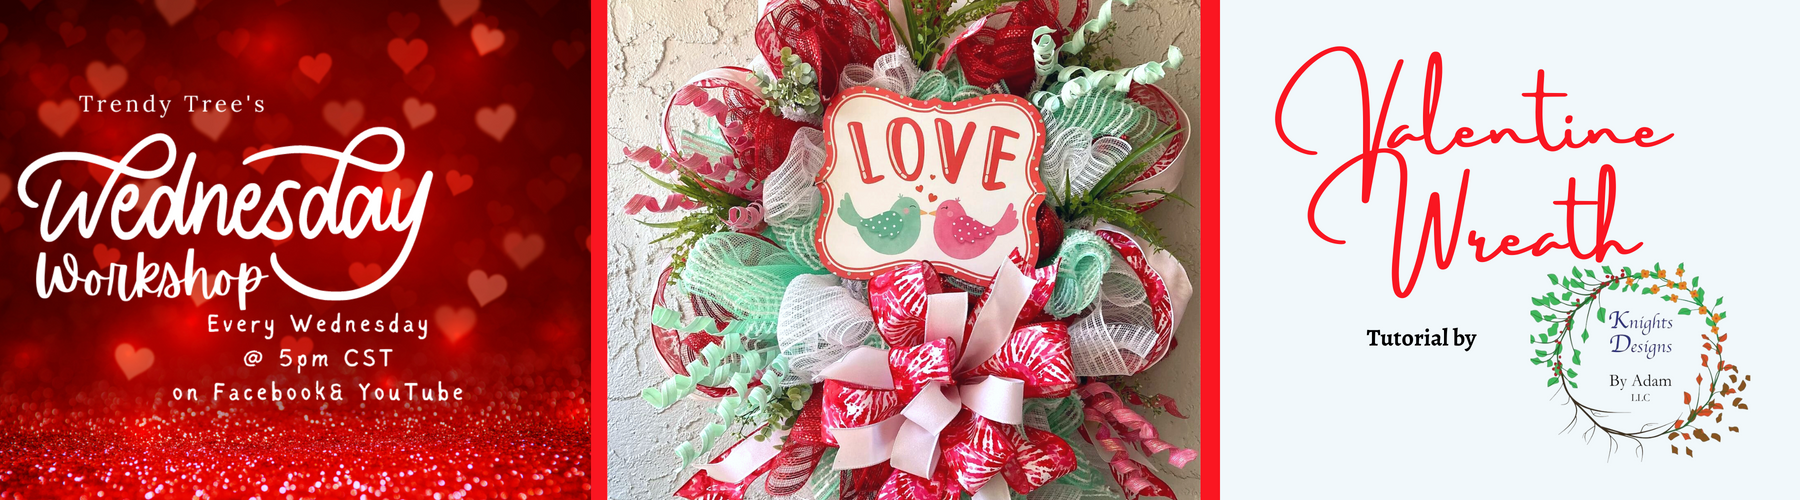 valentine wreath with love bird sign